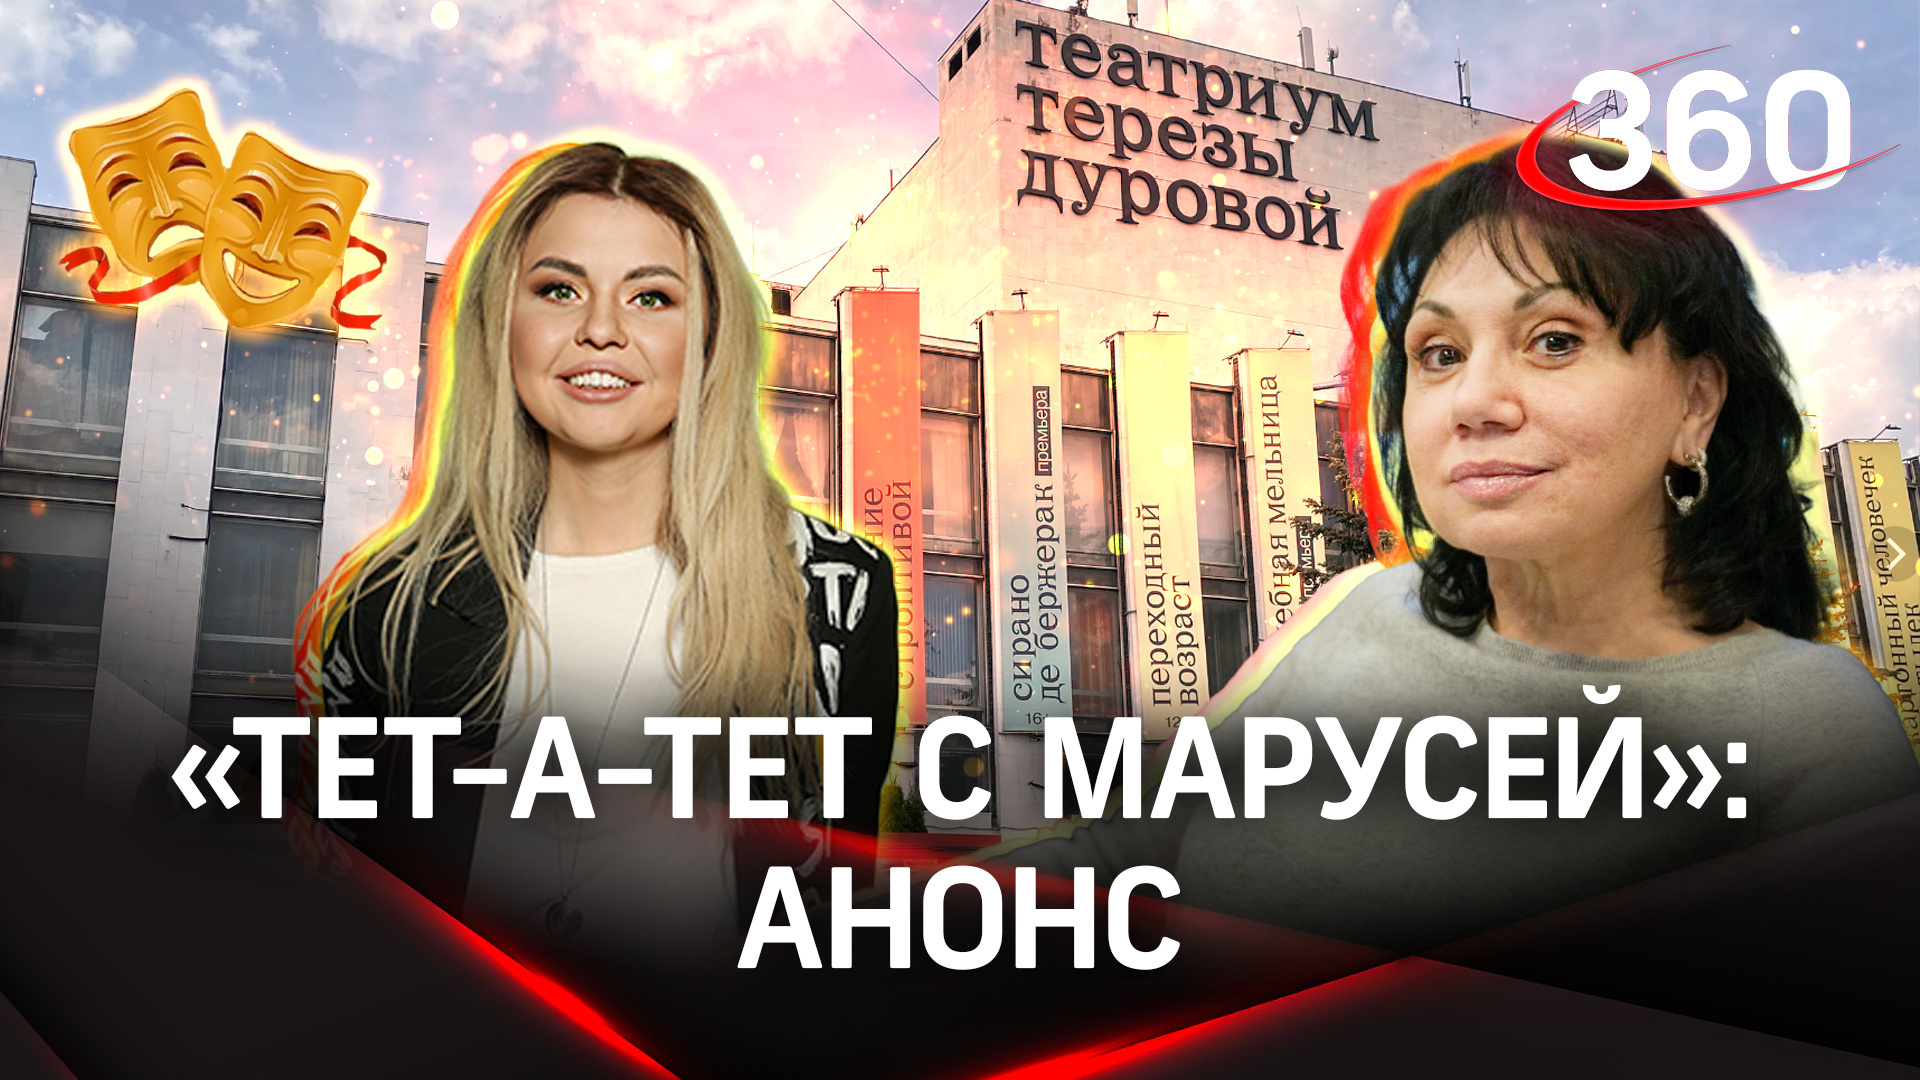 Тереза Дурова: «Мы сделаем все сегодня, чтобы вы ушли счастливыми» | «Тет-а-тет с Марусей»